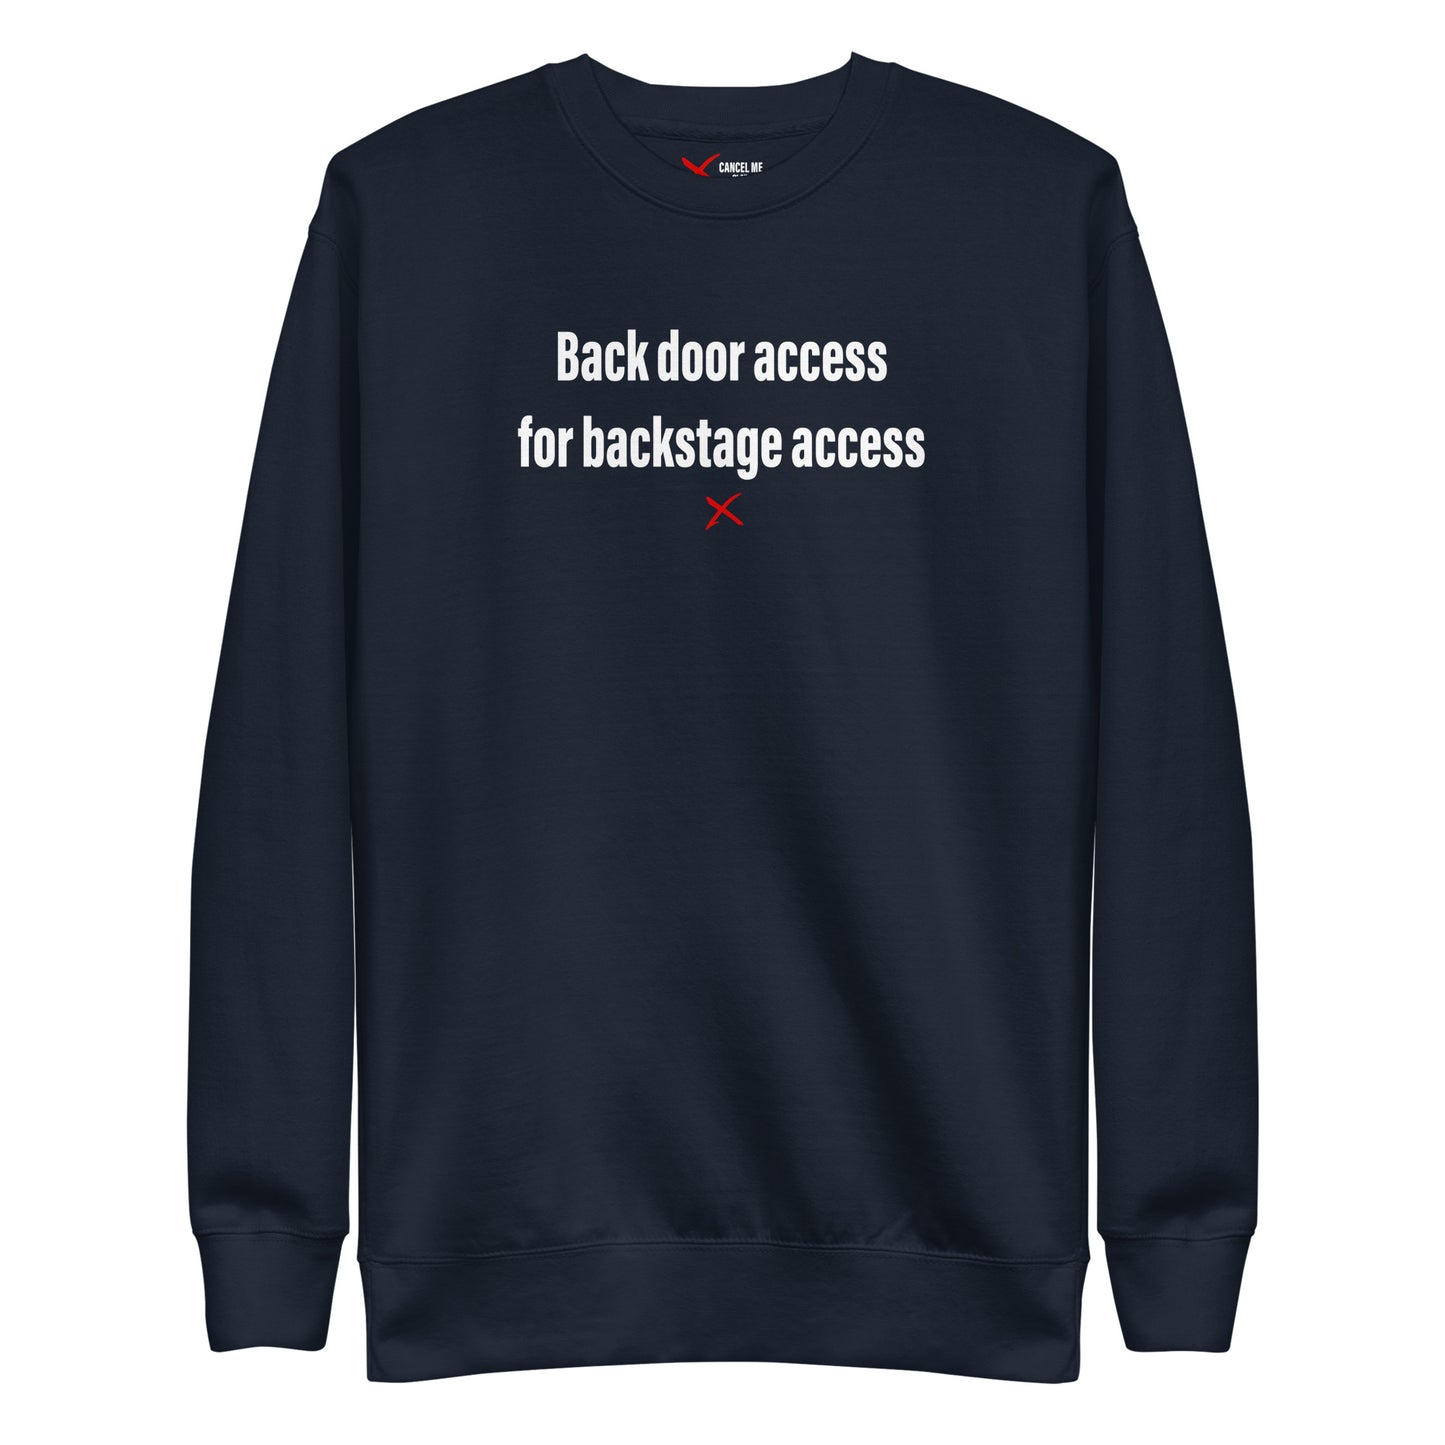 Back door access for backstage access - Sweatshirt